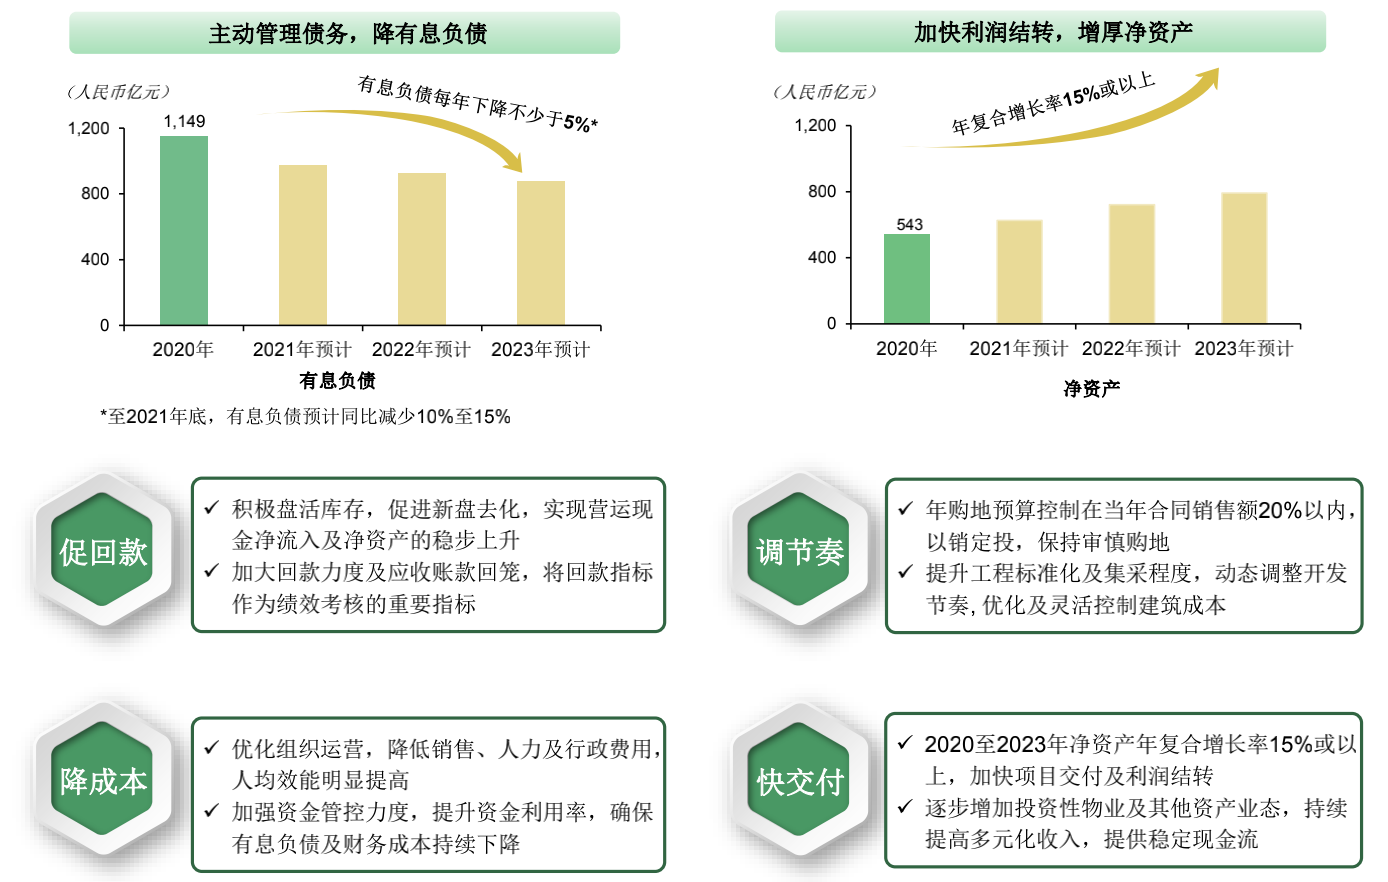 陈志斌：中国奥园将于2022年实现“三道红线”全绿